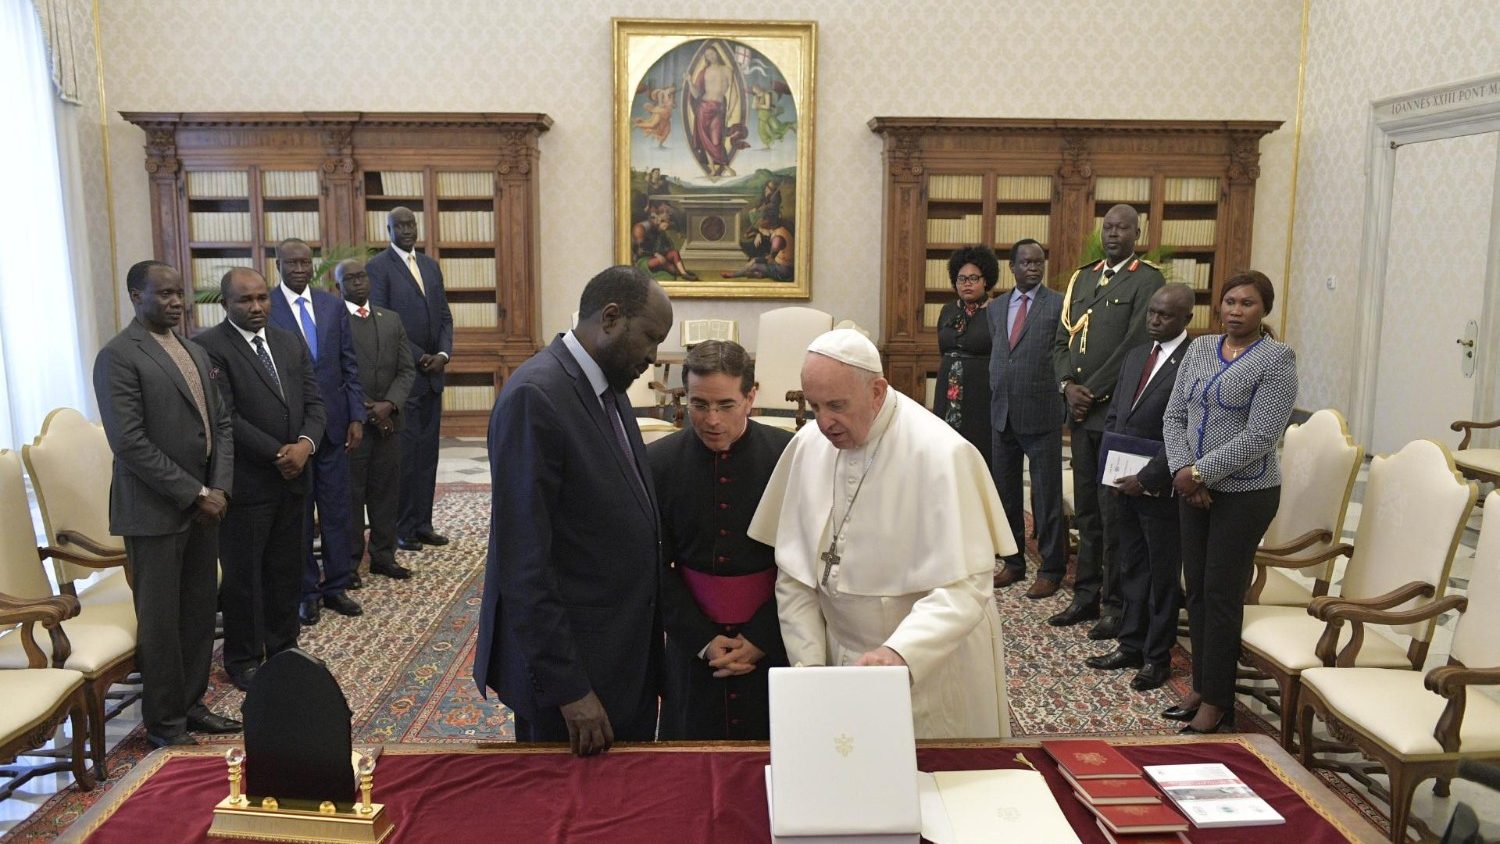 Presidente de Sudán del Sur confirma al papa Francisco que negociará acuerdo de paz en su país